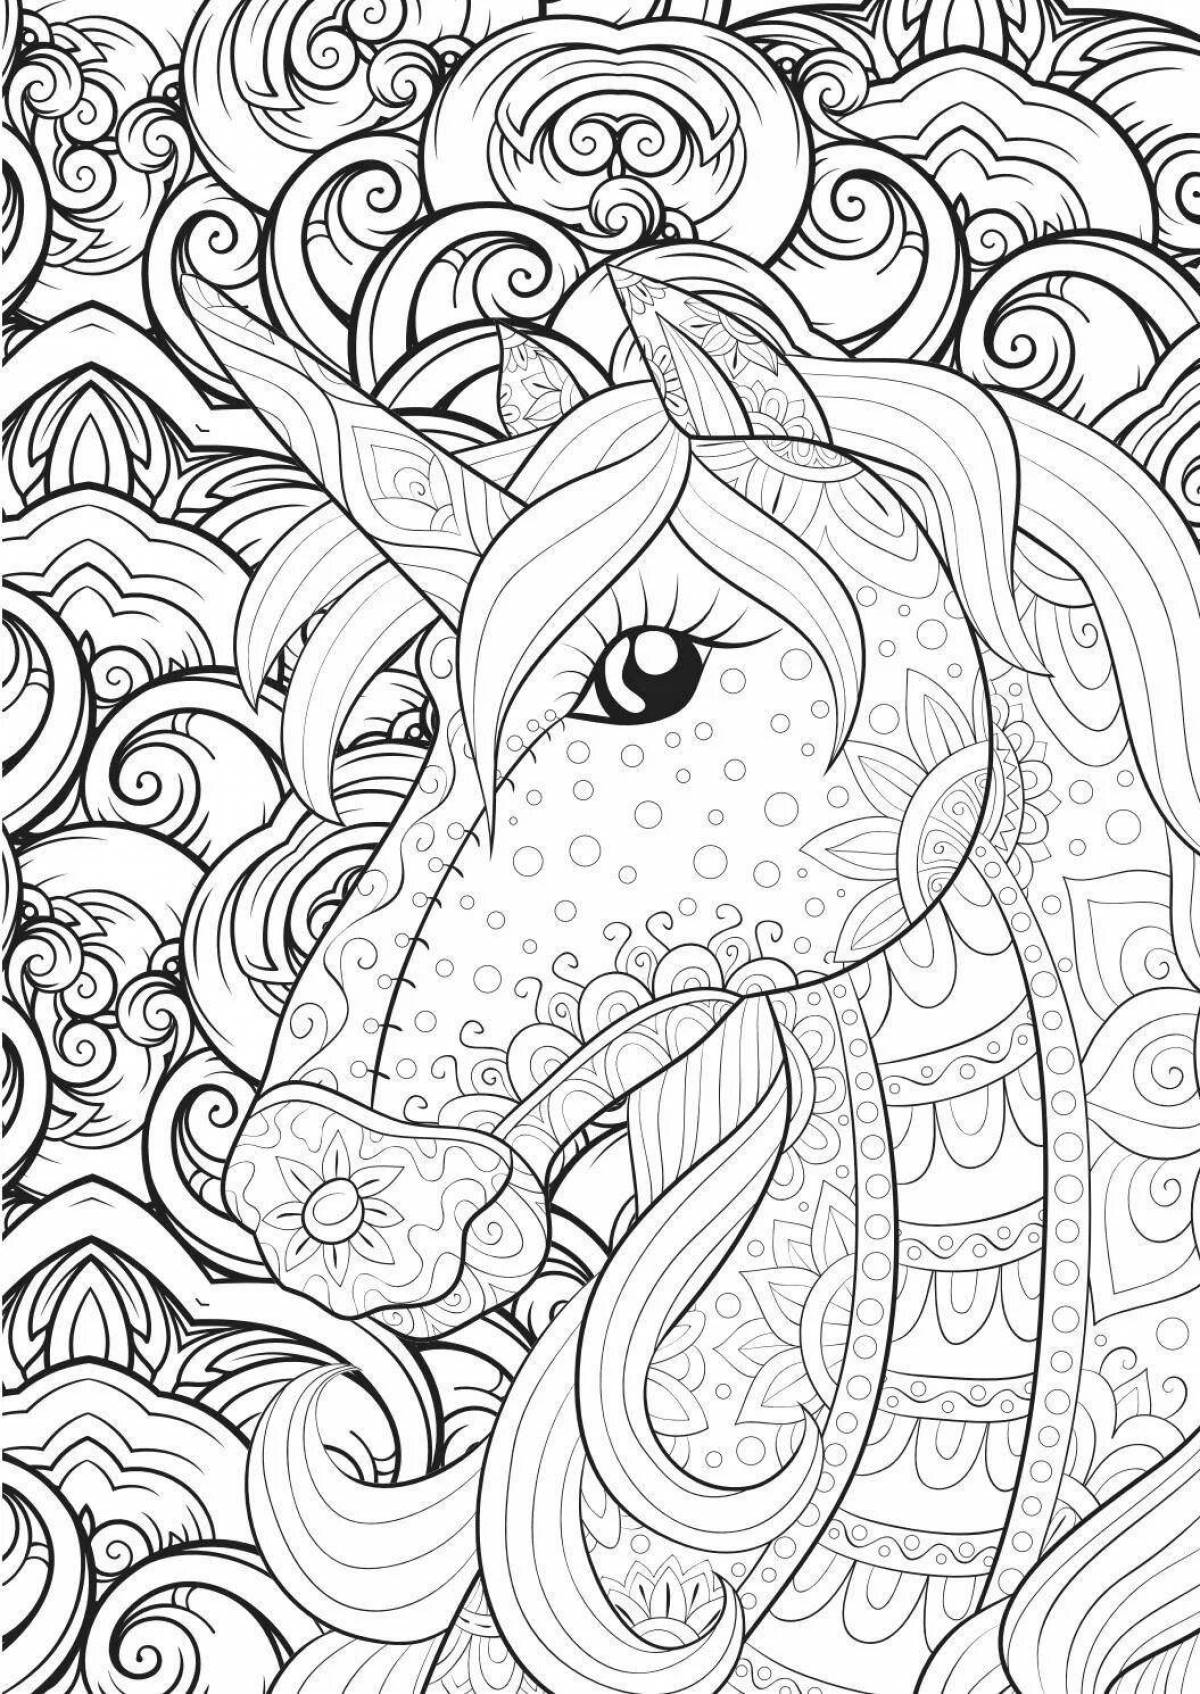 Coloring unicorn complex